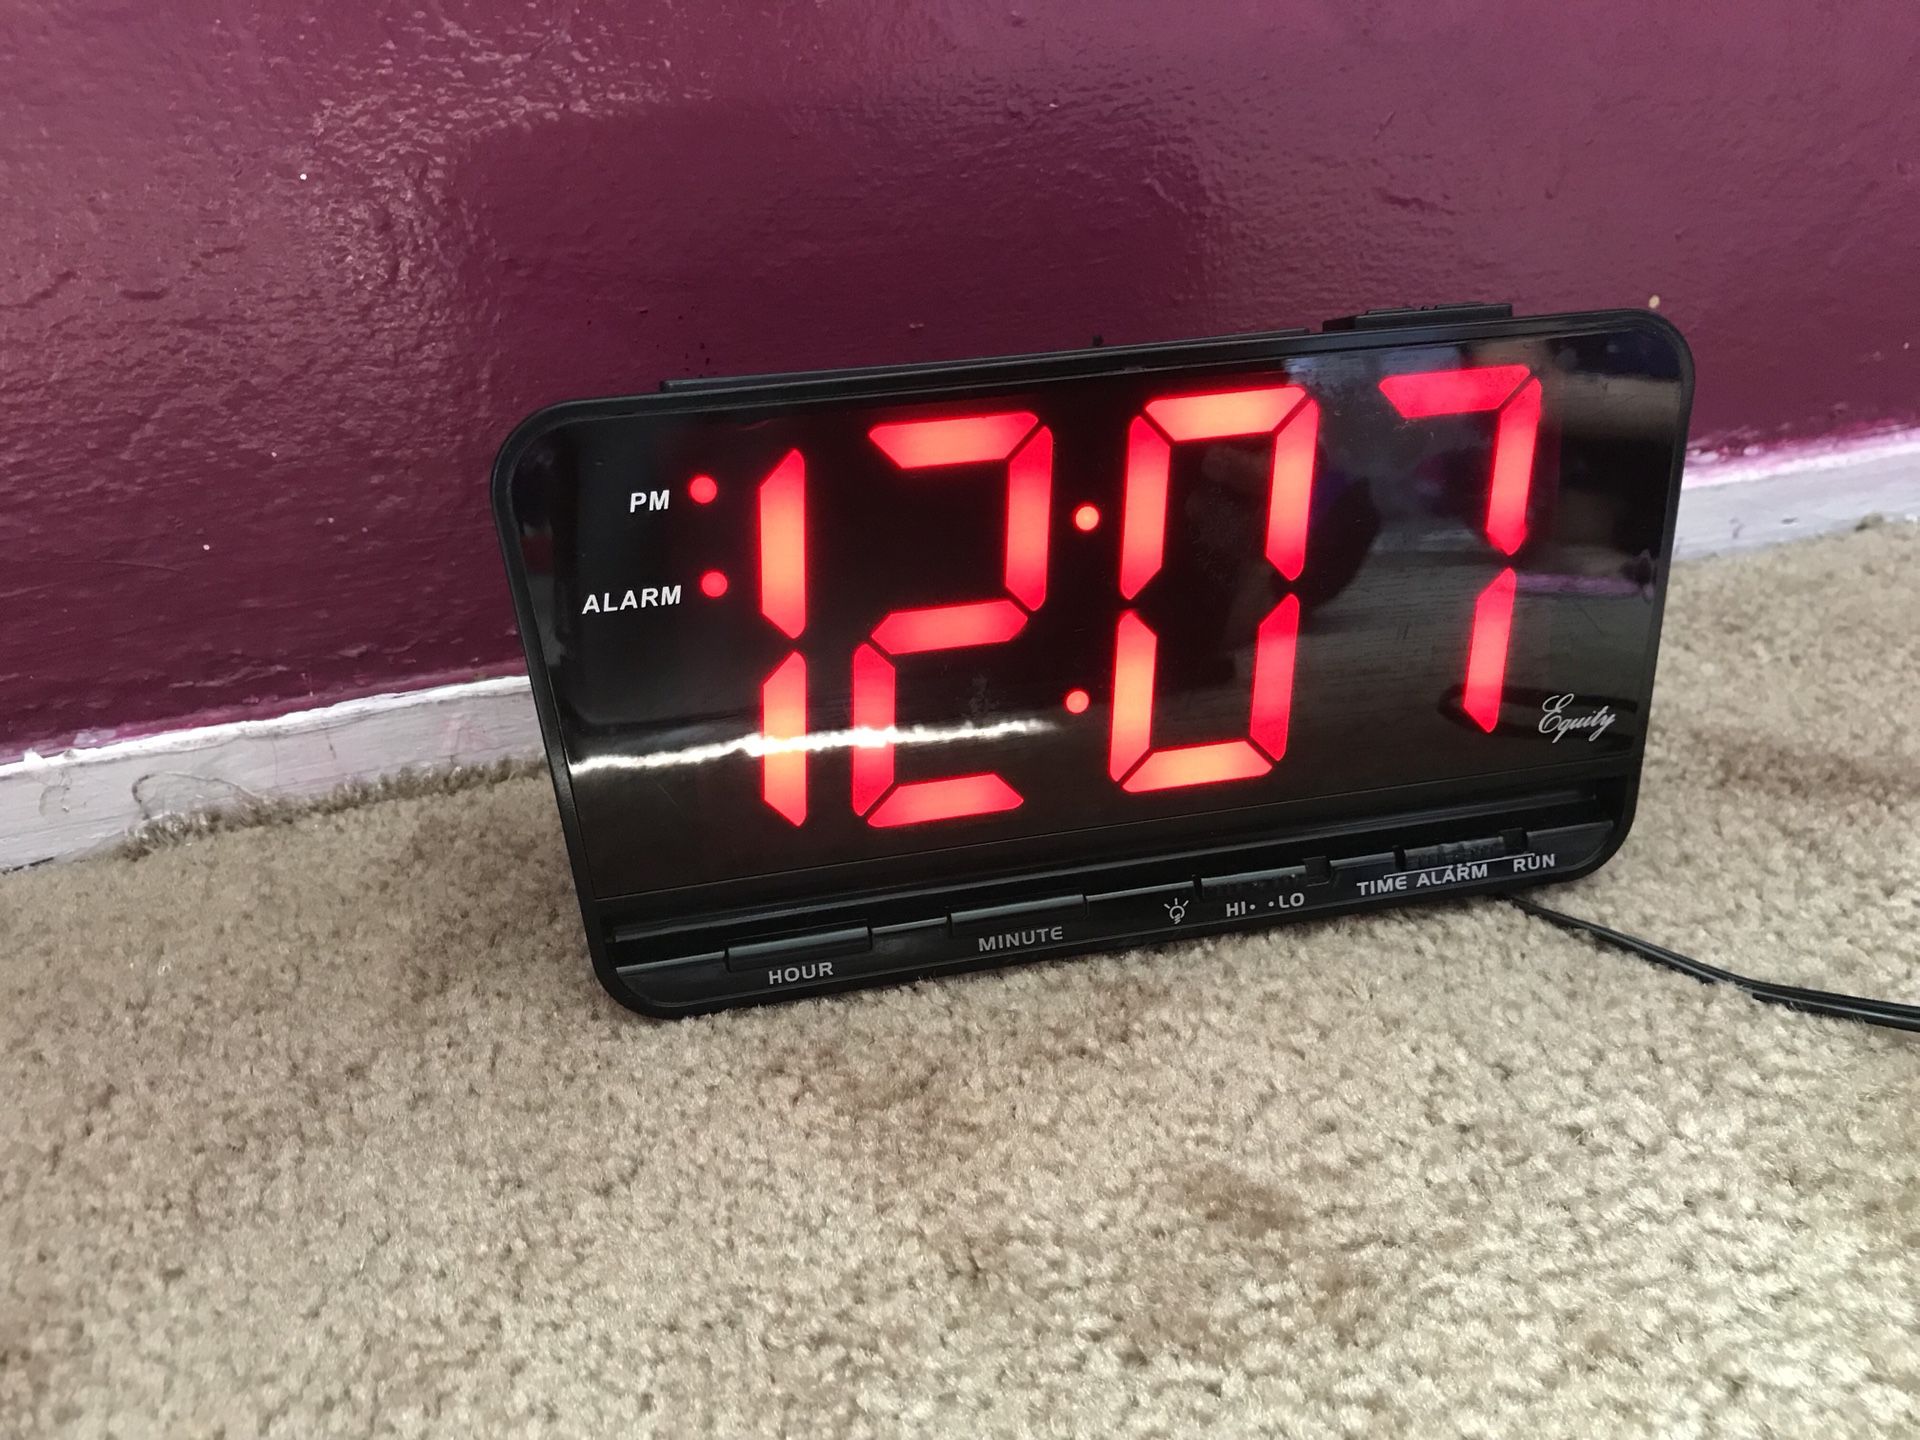 Large 8in alarm clock